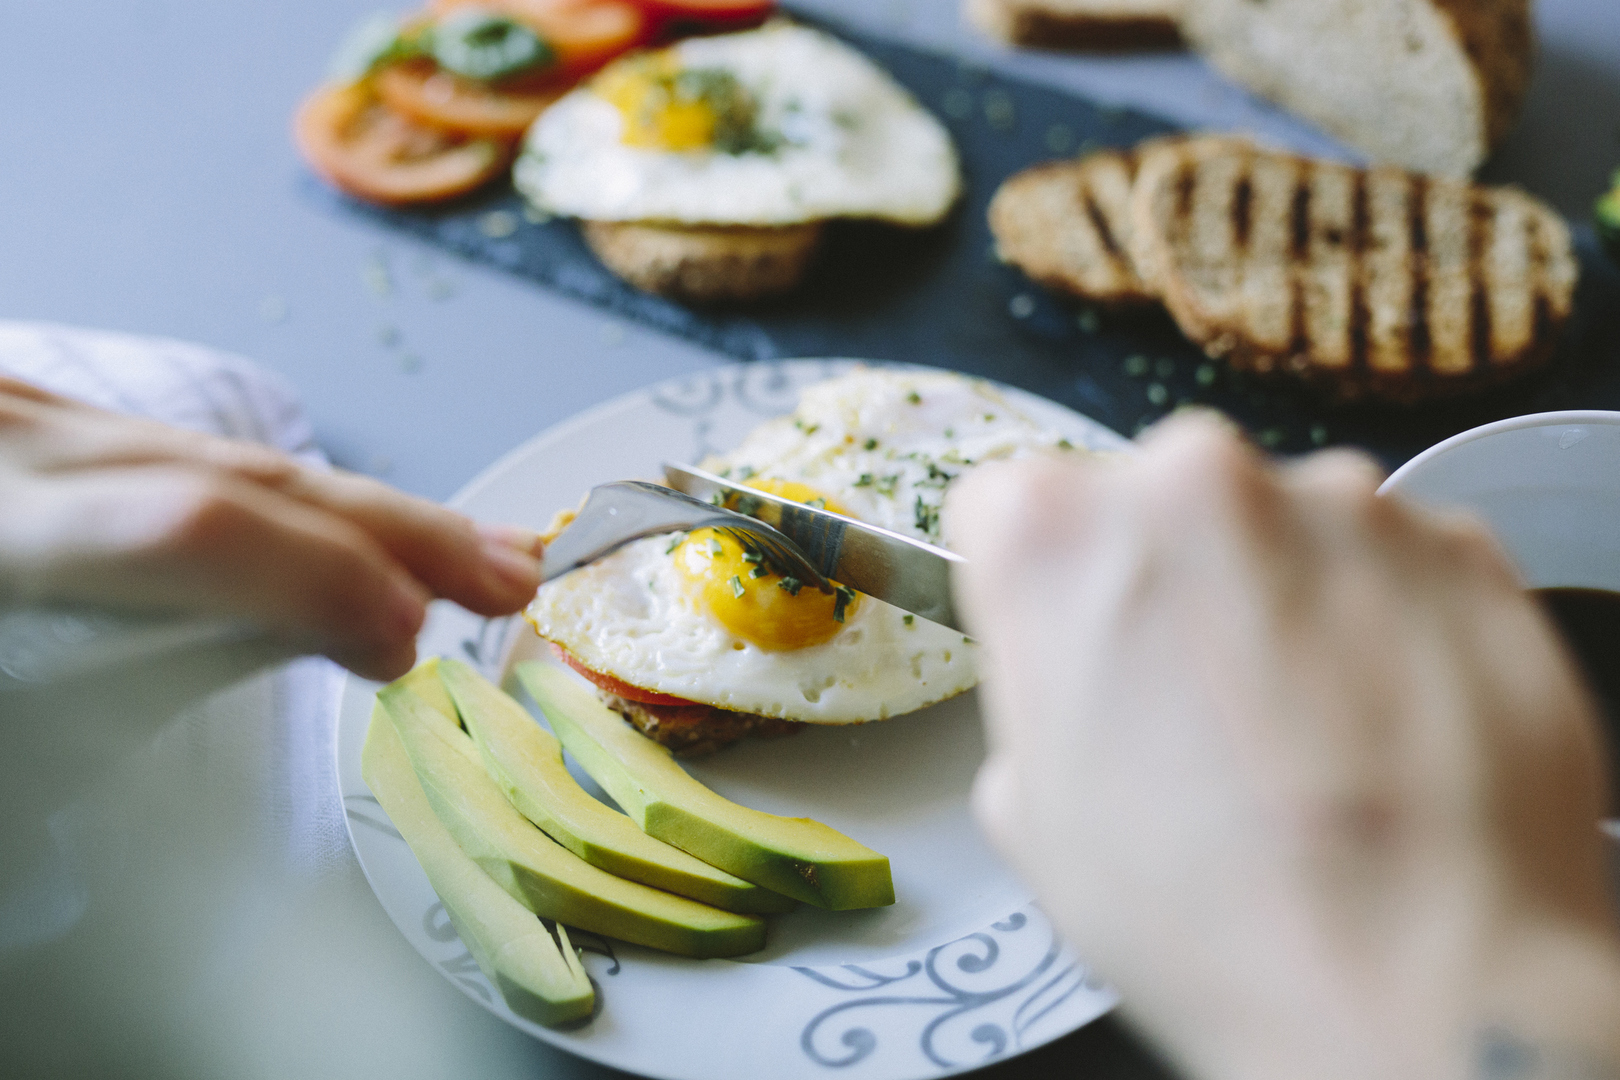 كيف يمكن أن يعزز تناول البيض صحة القلب؟